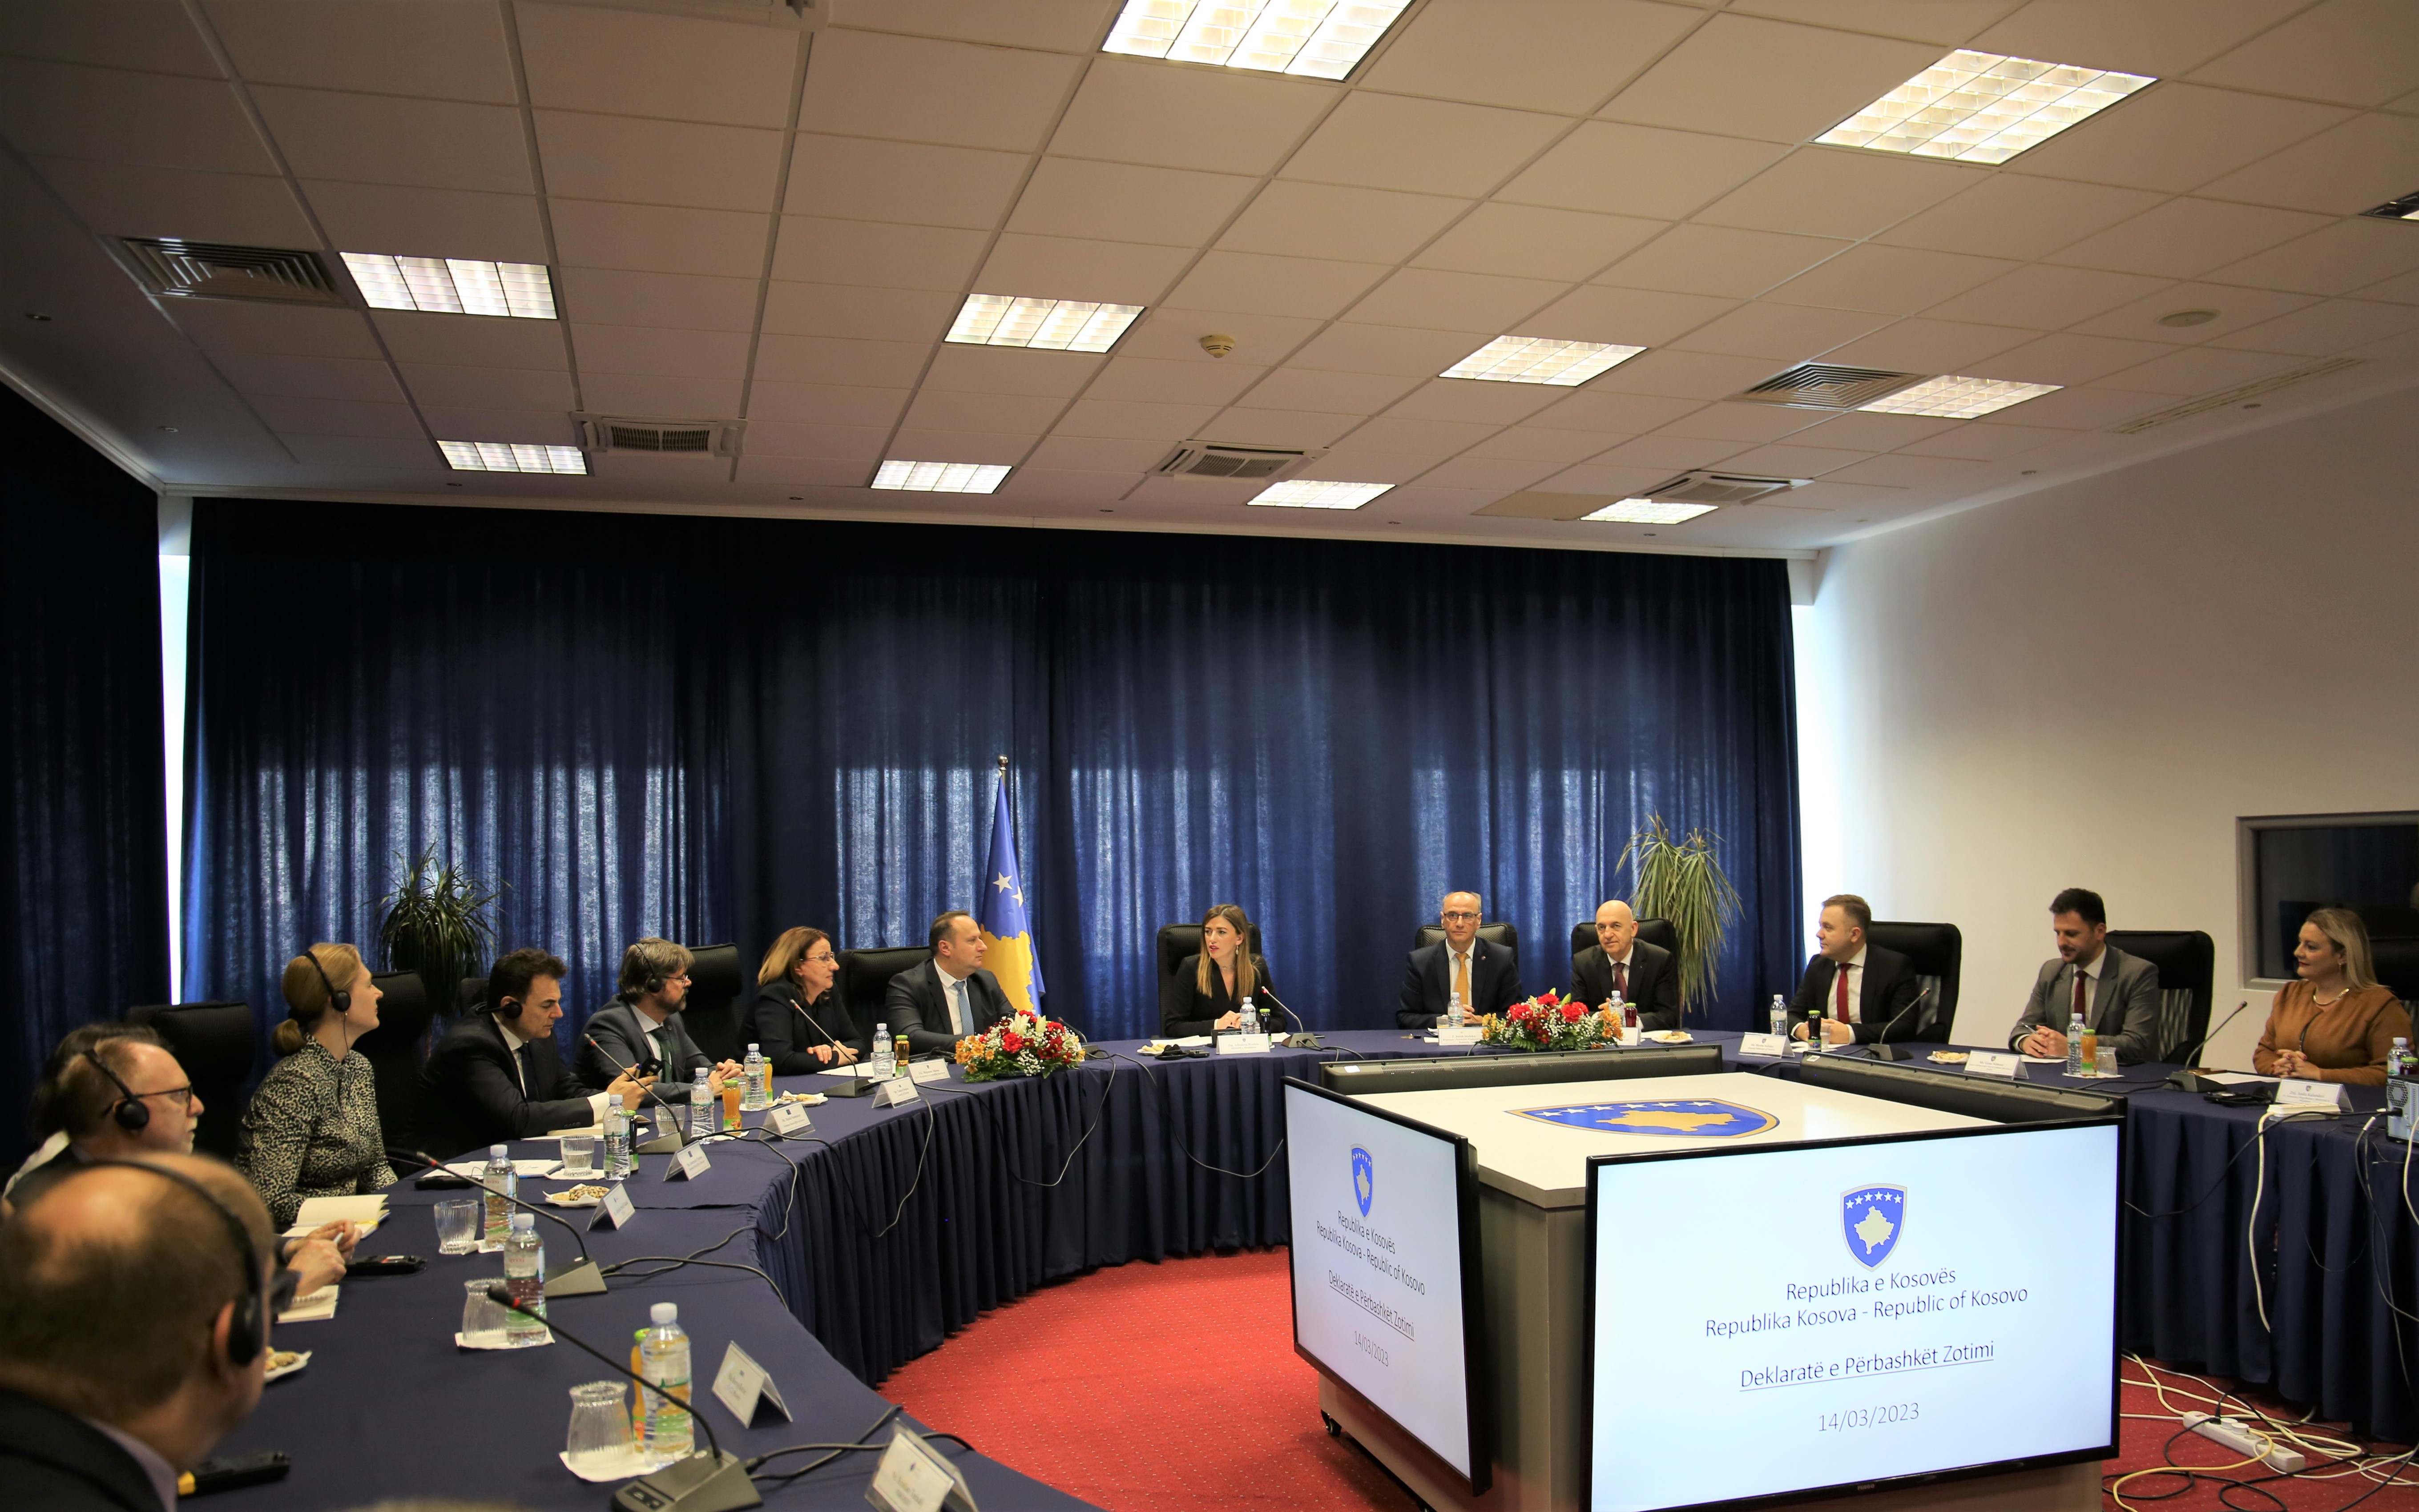 Nënshkruhet deklarata e përbashkët e zotimit për reformën ligjore në sistemin e drejtësisë në mes të Ministrisë së Drejtësisë, Këshillit Gjyqësor të Kosovës, Këshillit Prokurorial të Kosovës, Gjykatës Supreme dhe Kryeprokurorit të Shtetit